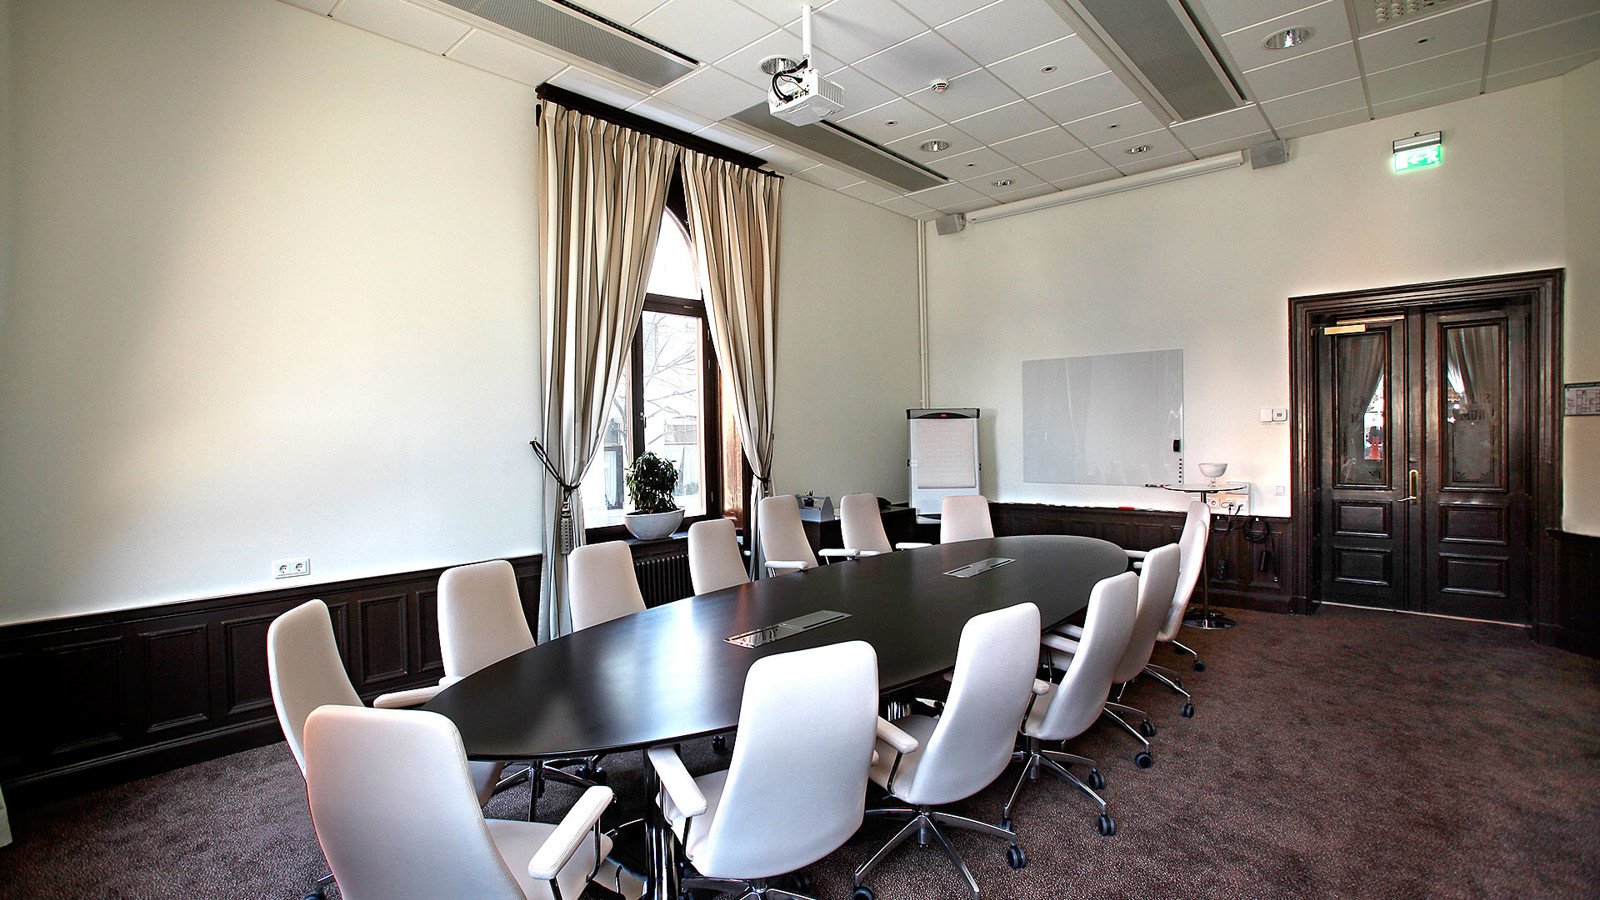 Konferenssal med runt bord, stor dörr och fönster